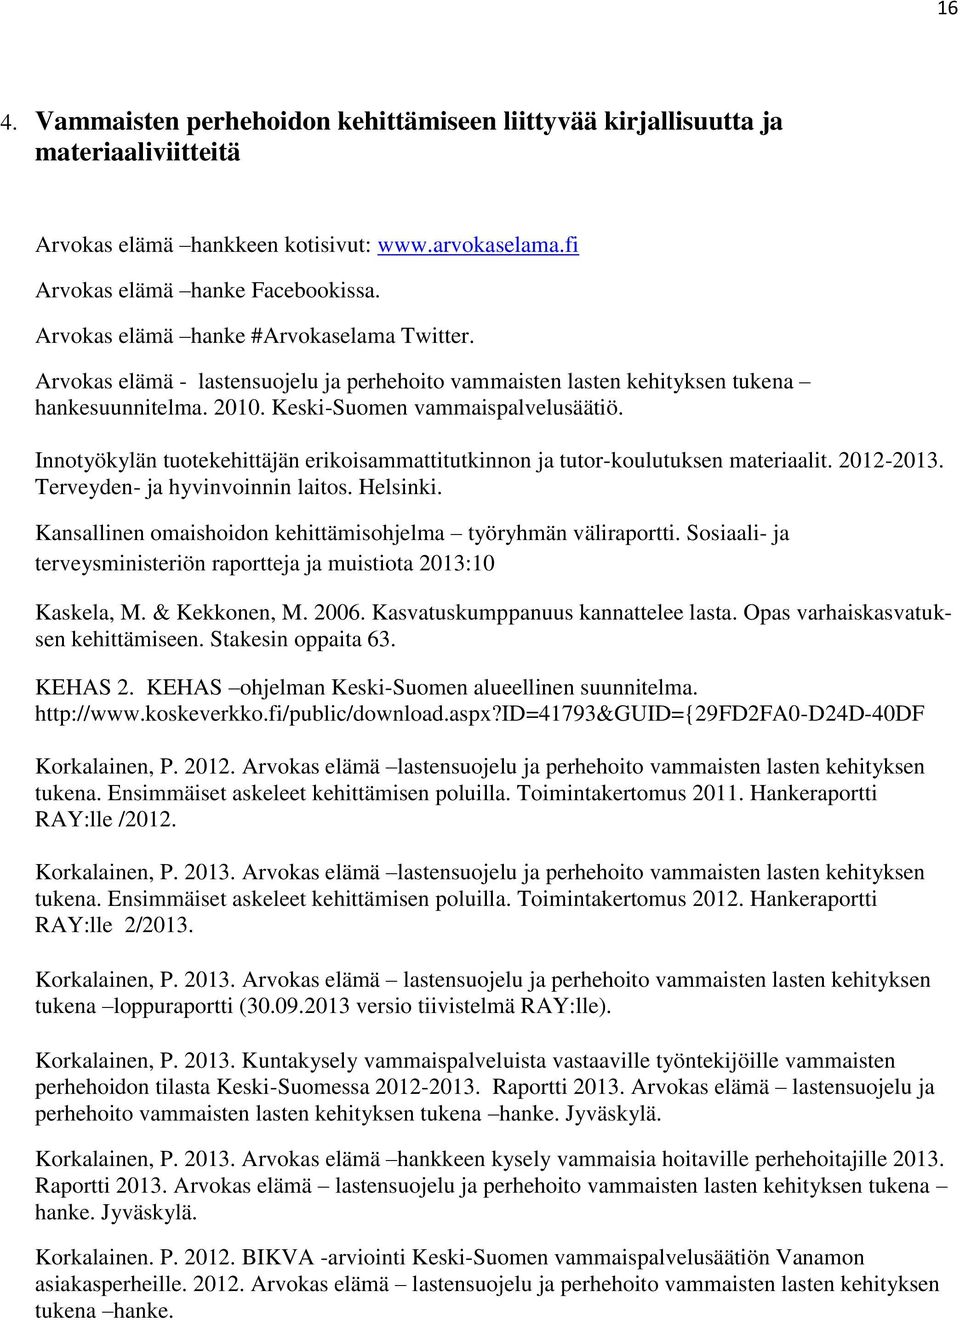 Innotyökylän tuotekehittäjän erikoisammattitutkinnon ja tutor-koulutuksen materiaalit. 2012-2013. Terveyden- ja hyvinvoinnin laitos. Helsinki.